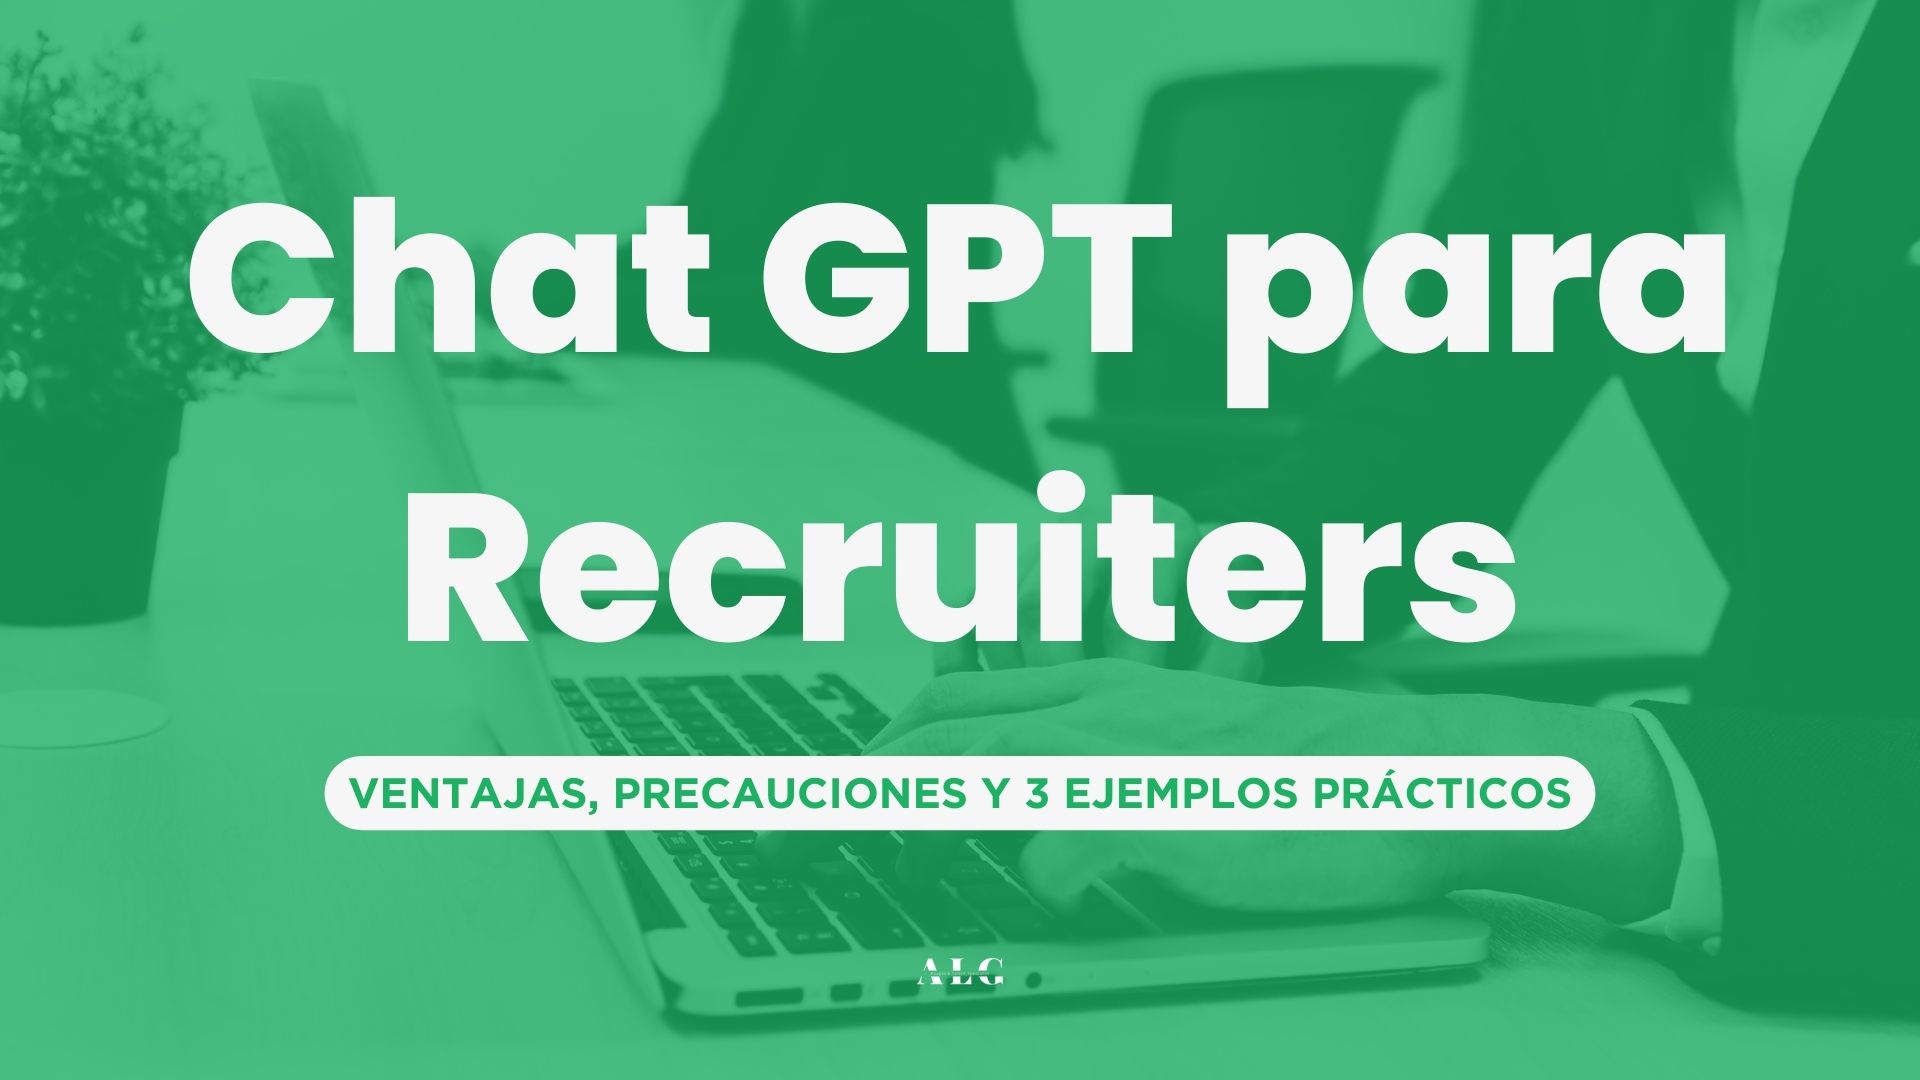 ChatGPT para Recruiters: 3 ejemplos prácticos